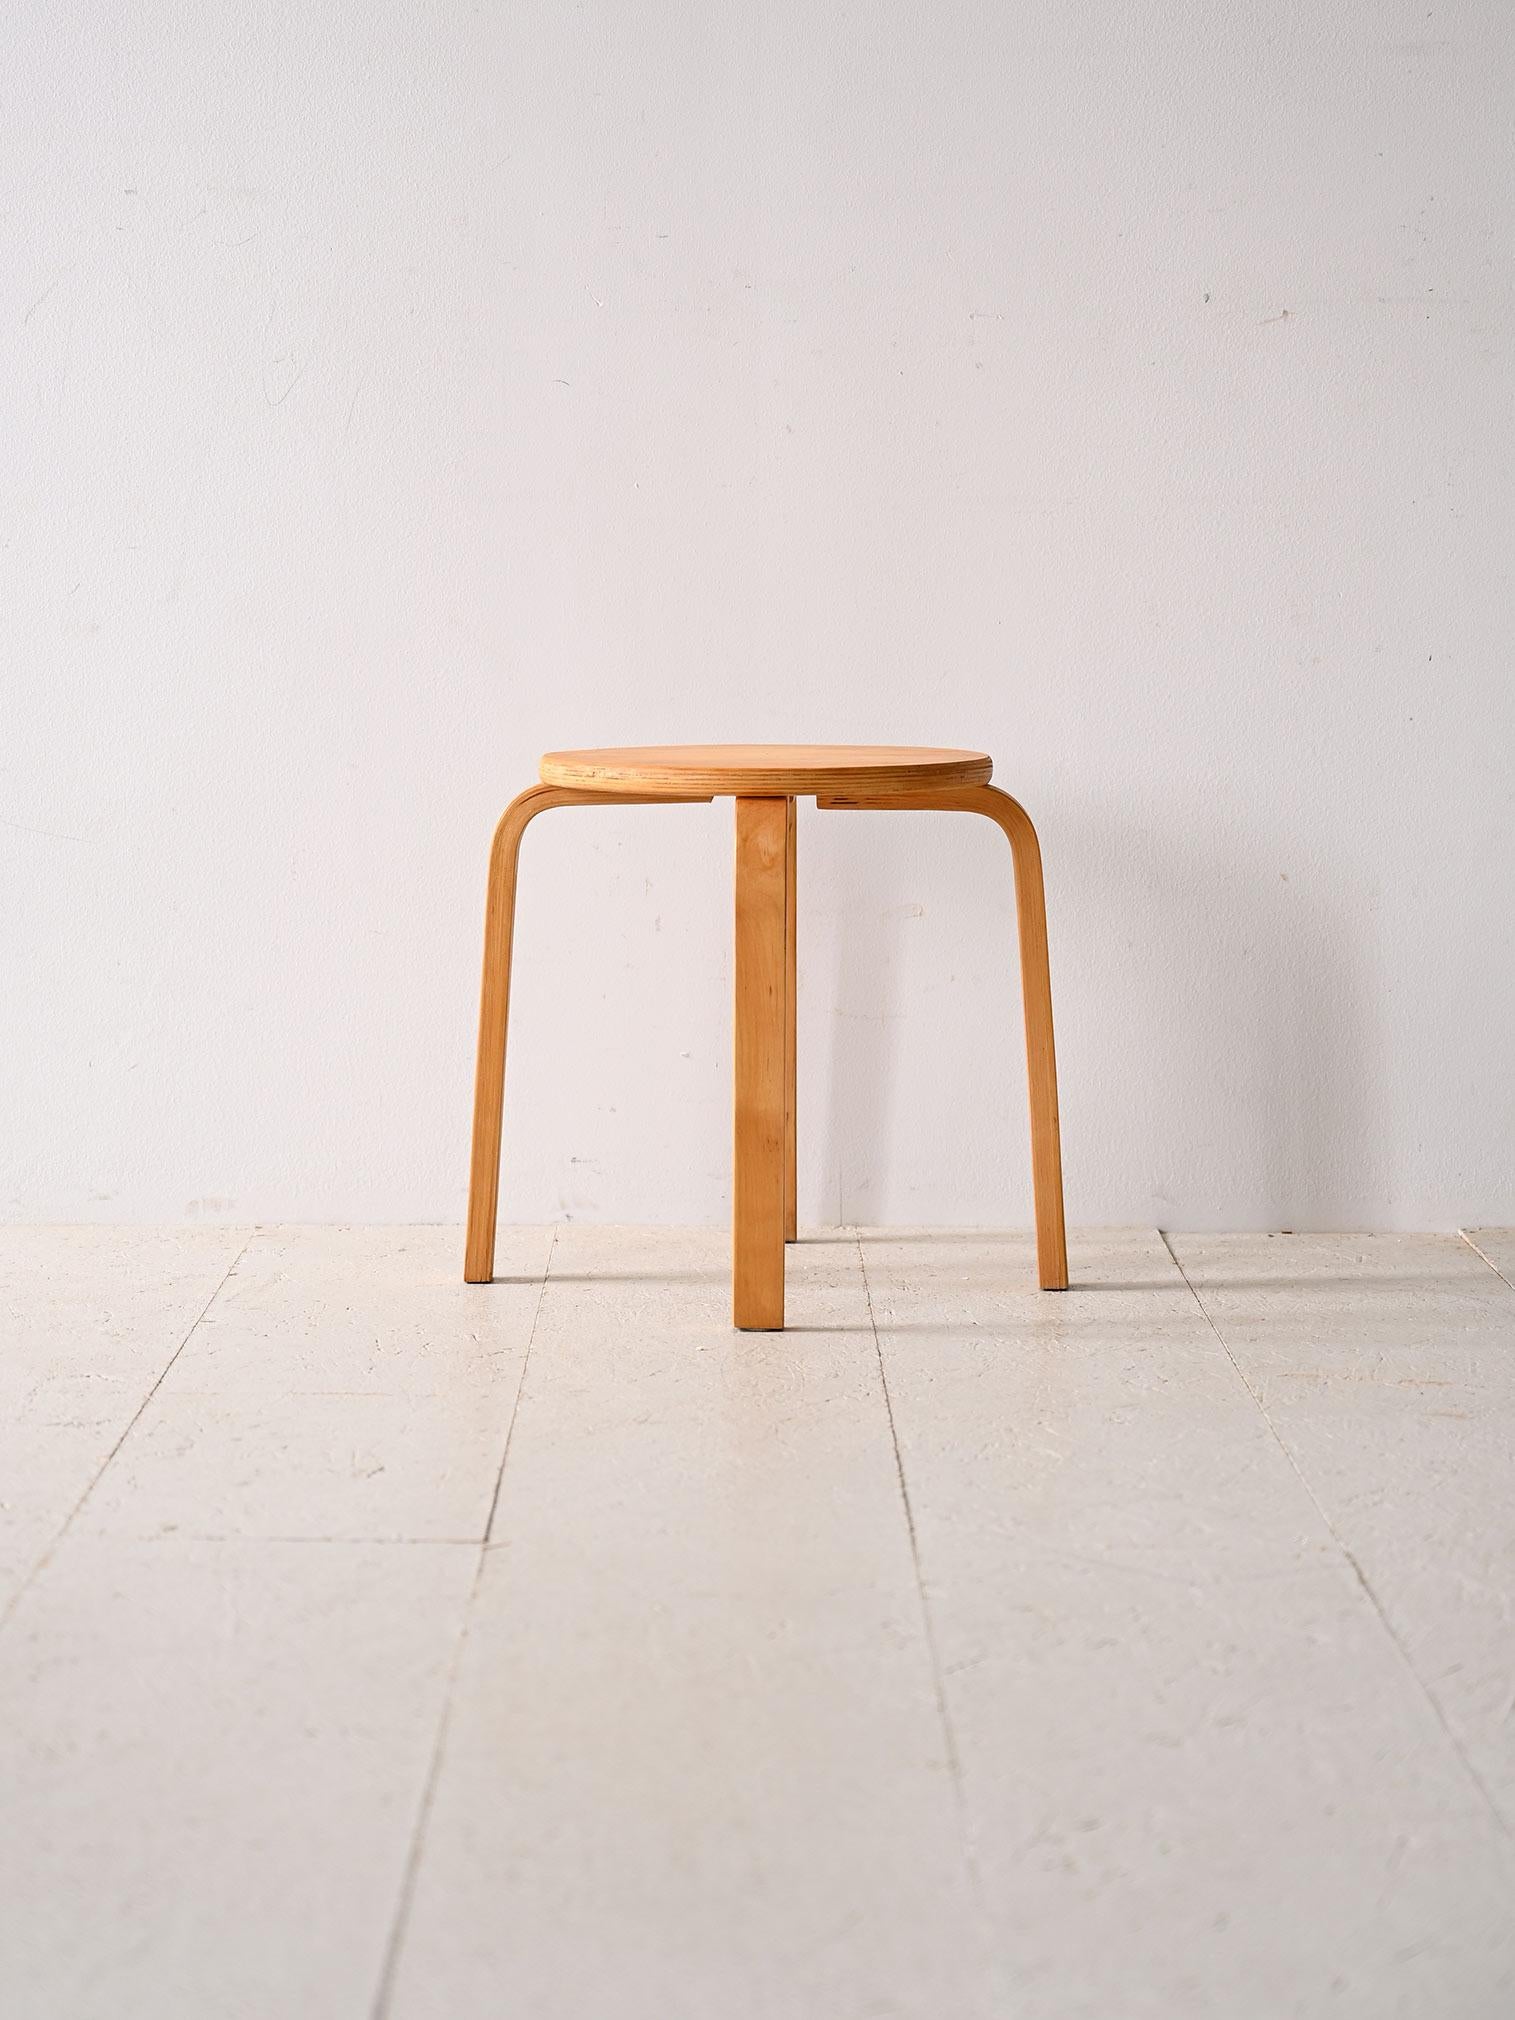 Tabouret original en bois stratifié scandinave.

Ce meuble moderne et fonctionnel reprend les lignes et le goût du design scandinave du milieu du siècle dernier. La couleur du bois et l'aspect minimaliste permettent de l'adapter à différents styles